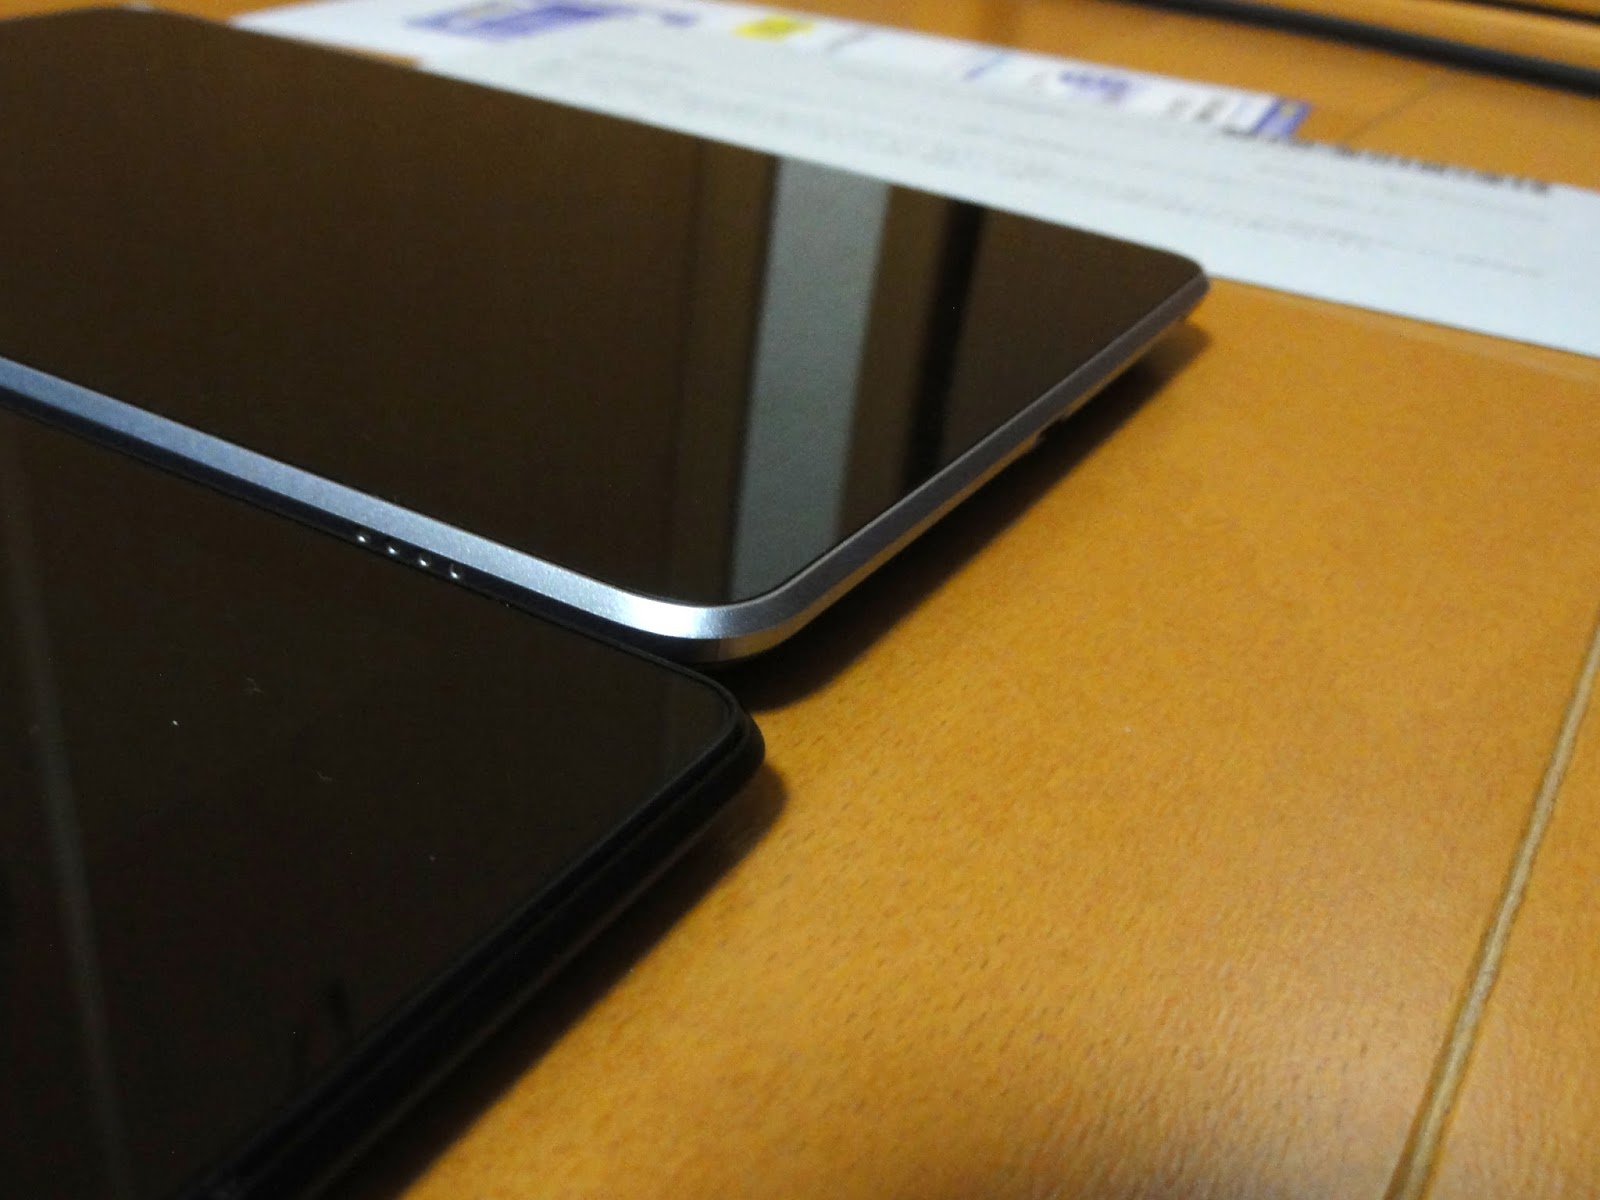 ひらぎまライフ Google Nexus 7 2013 Lte Iijmioプリペイドパック フライング到着